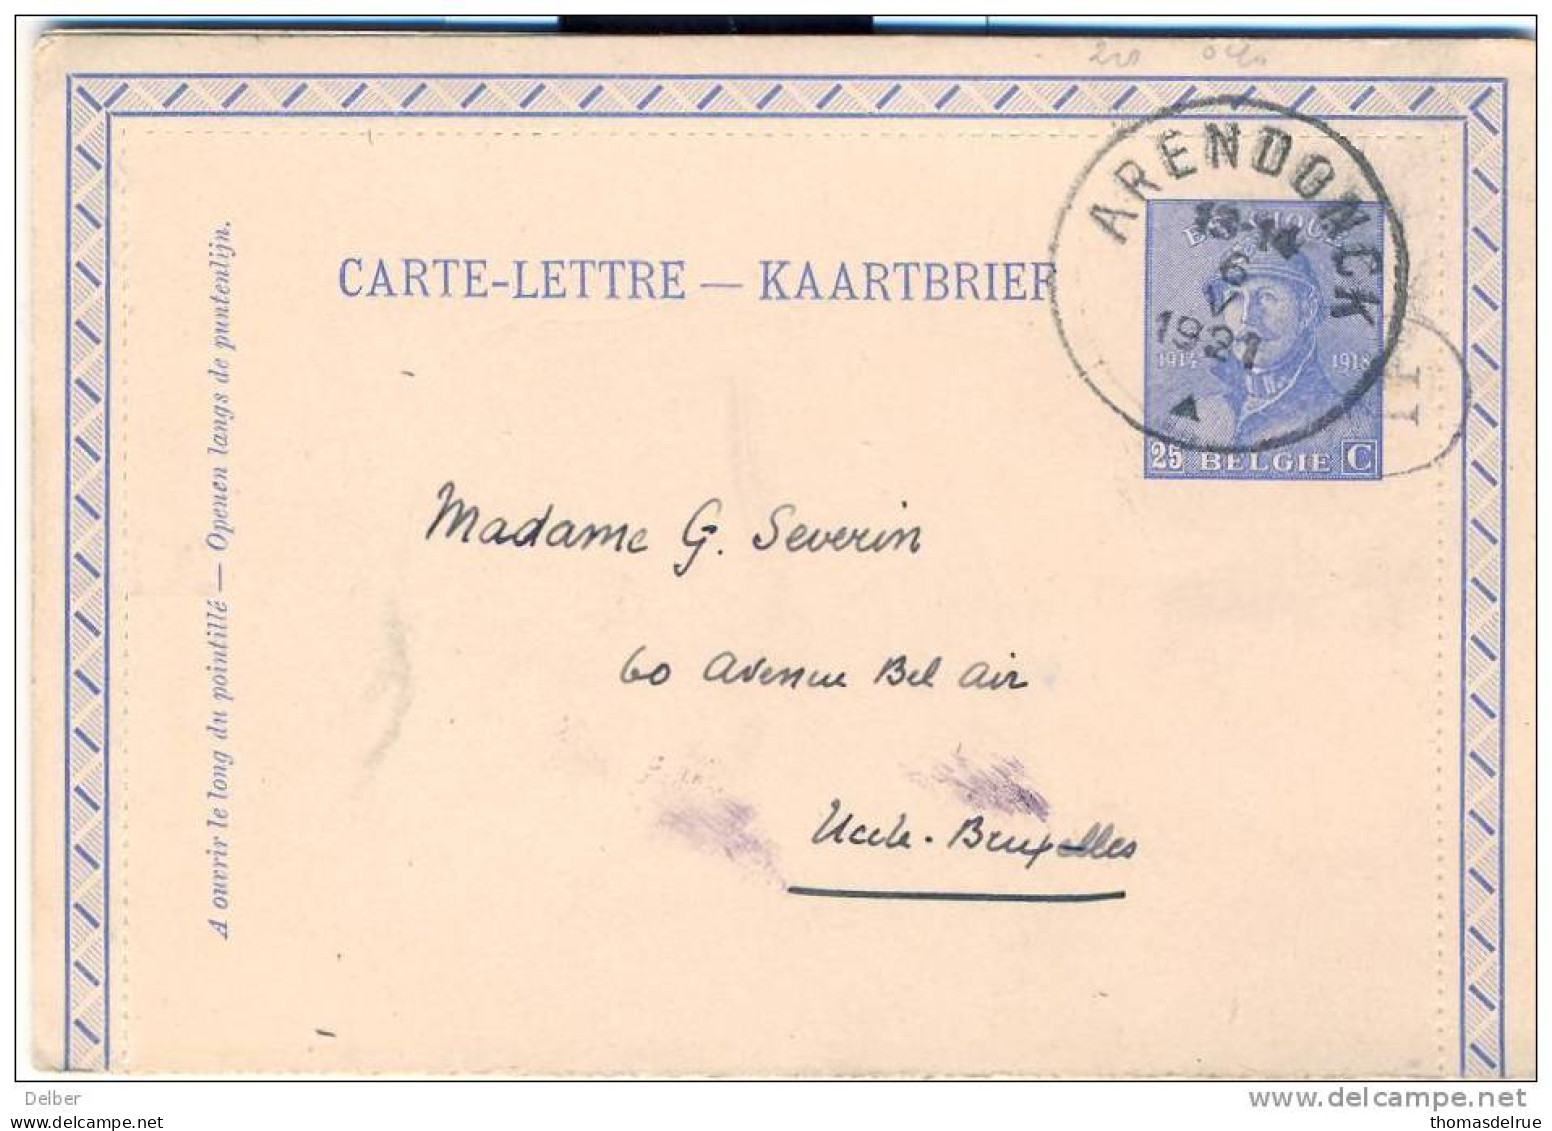 X_ik818_CARTE-LETTRE ---KAARTBRIEF: 25 Ct: ARENDONCK  ^  1921 > Uccles- Bruxelles - Cartes-lettres